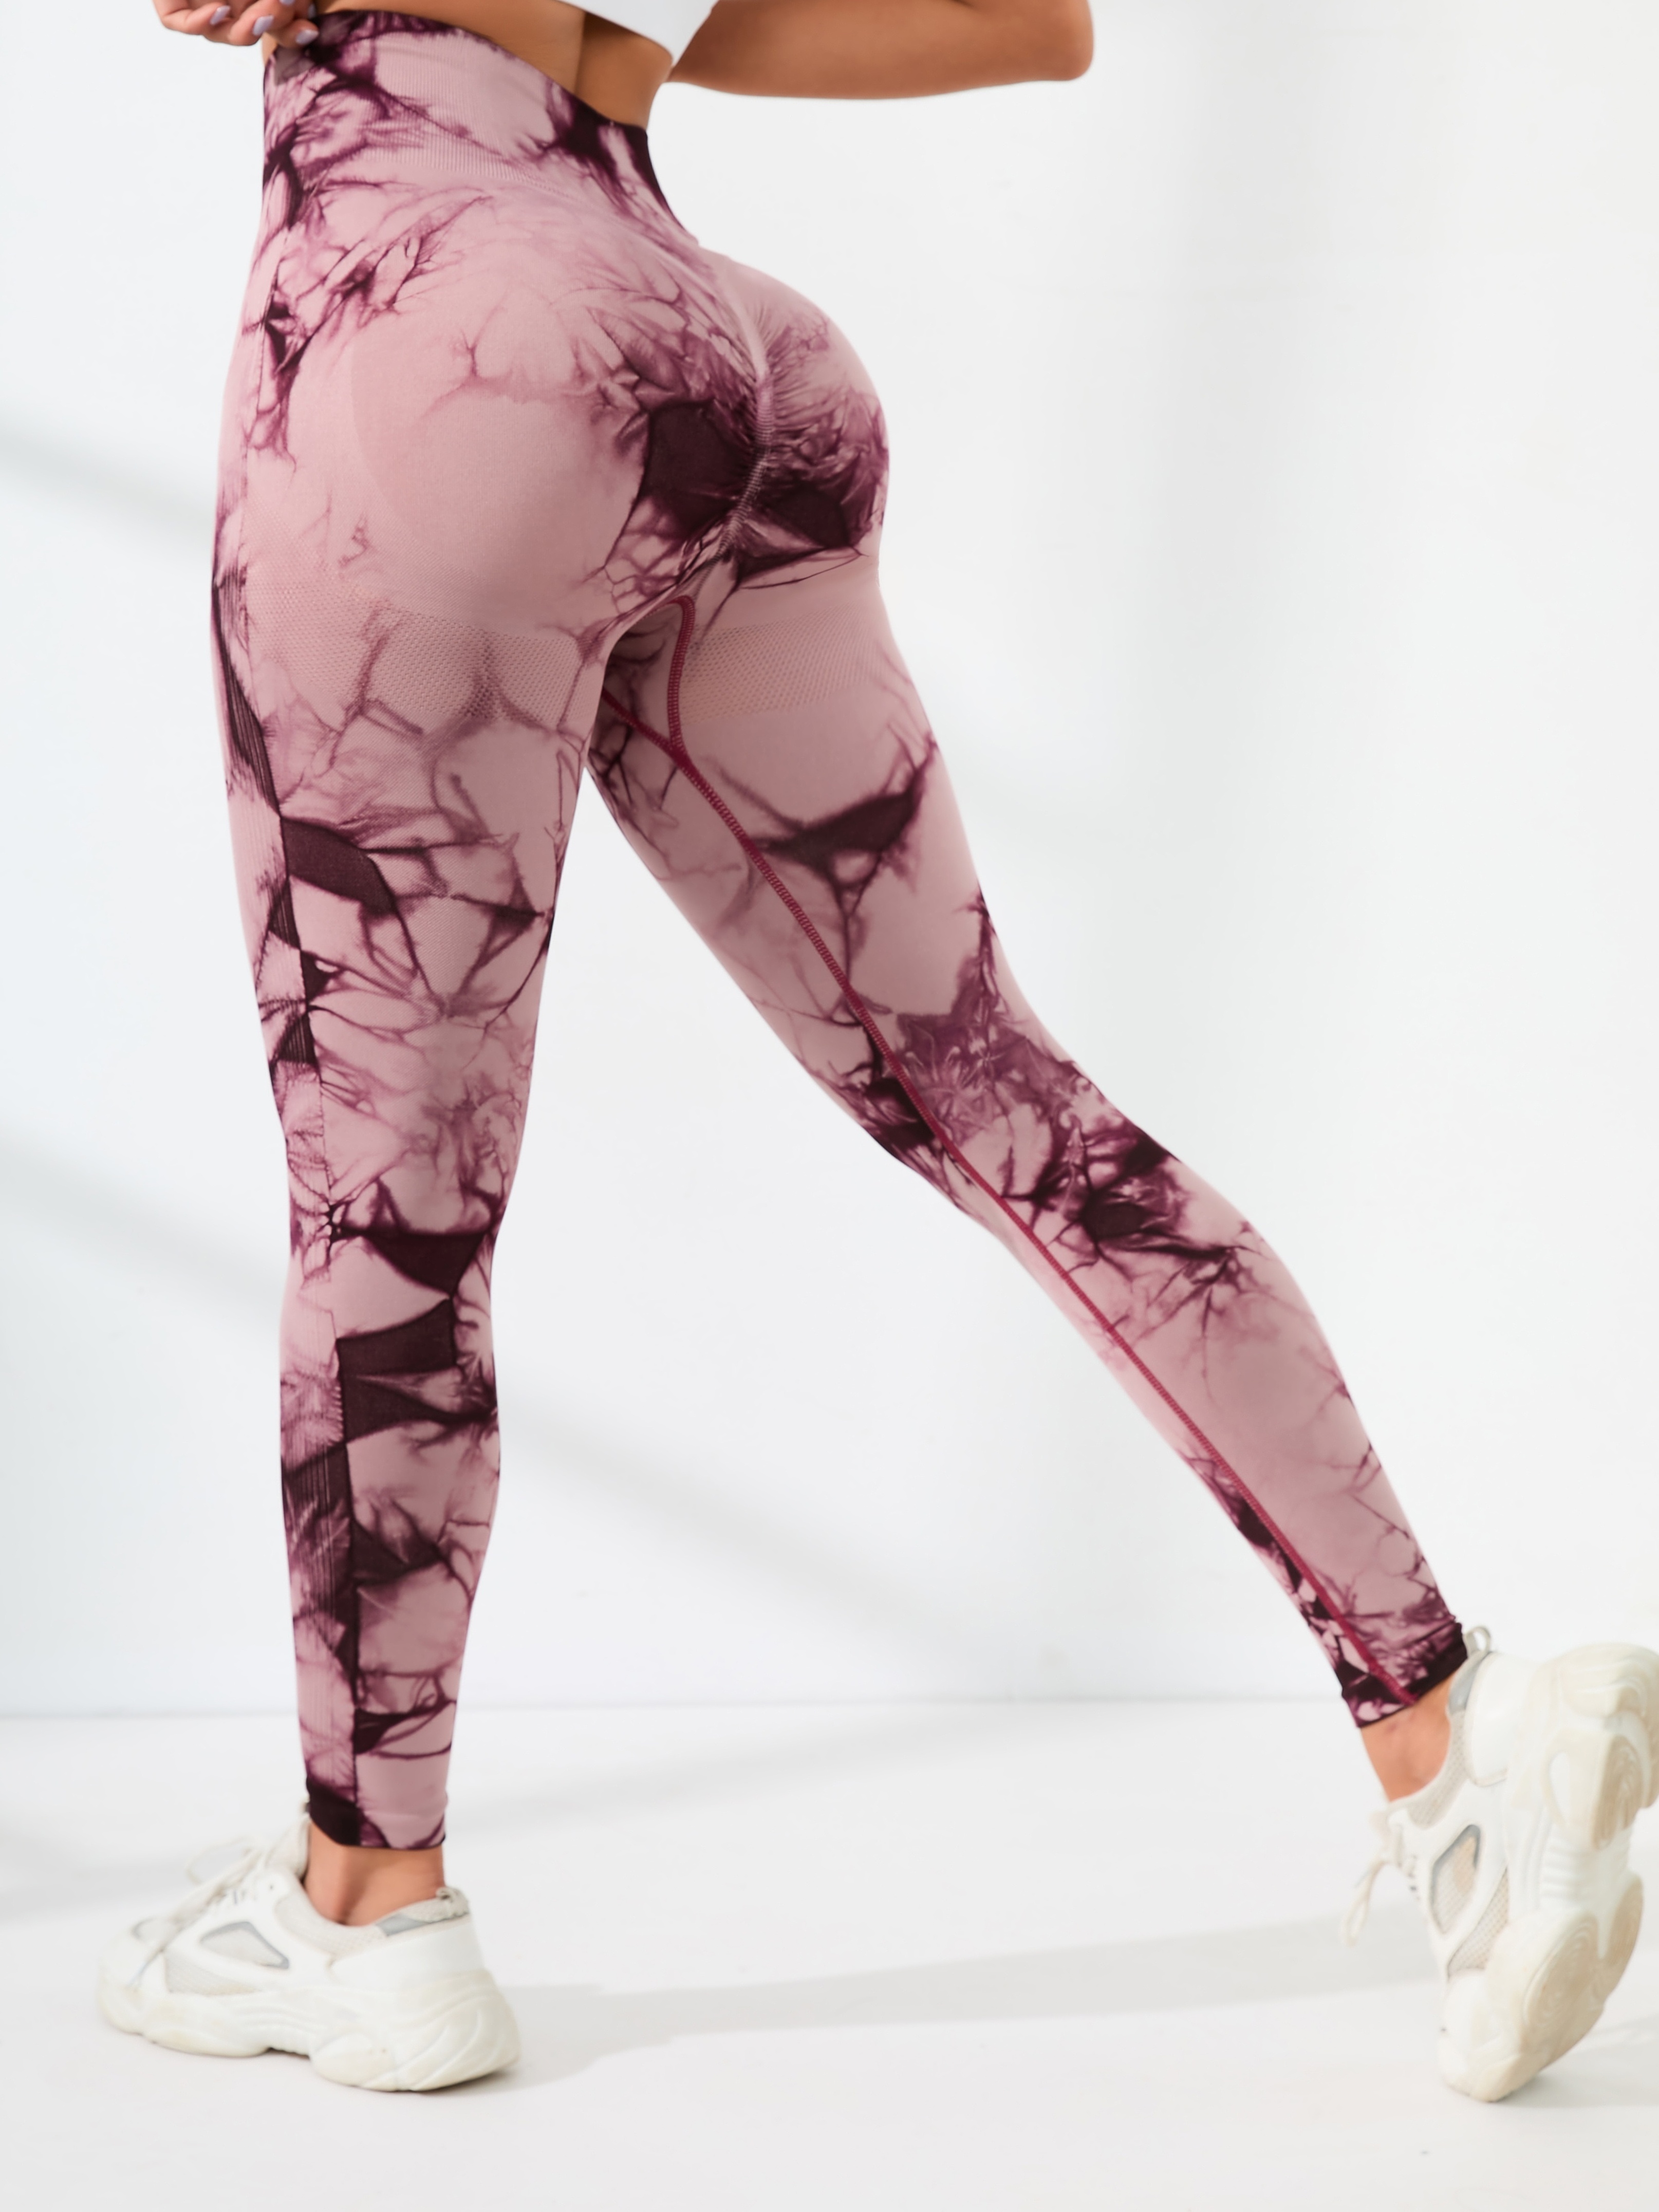 JBIVWW Sport Leggings Women Tie Dye Seamless Yoga Pants High Waist